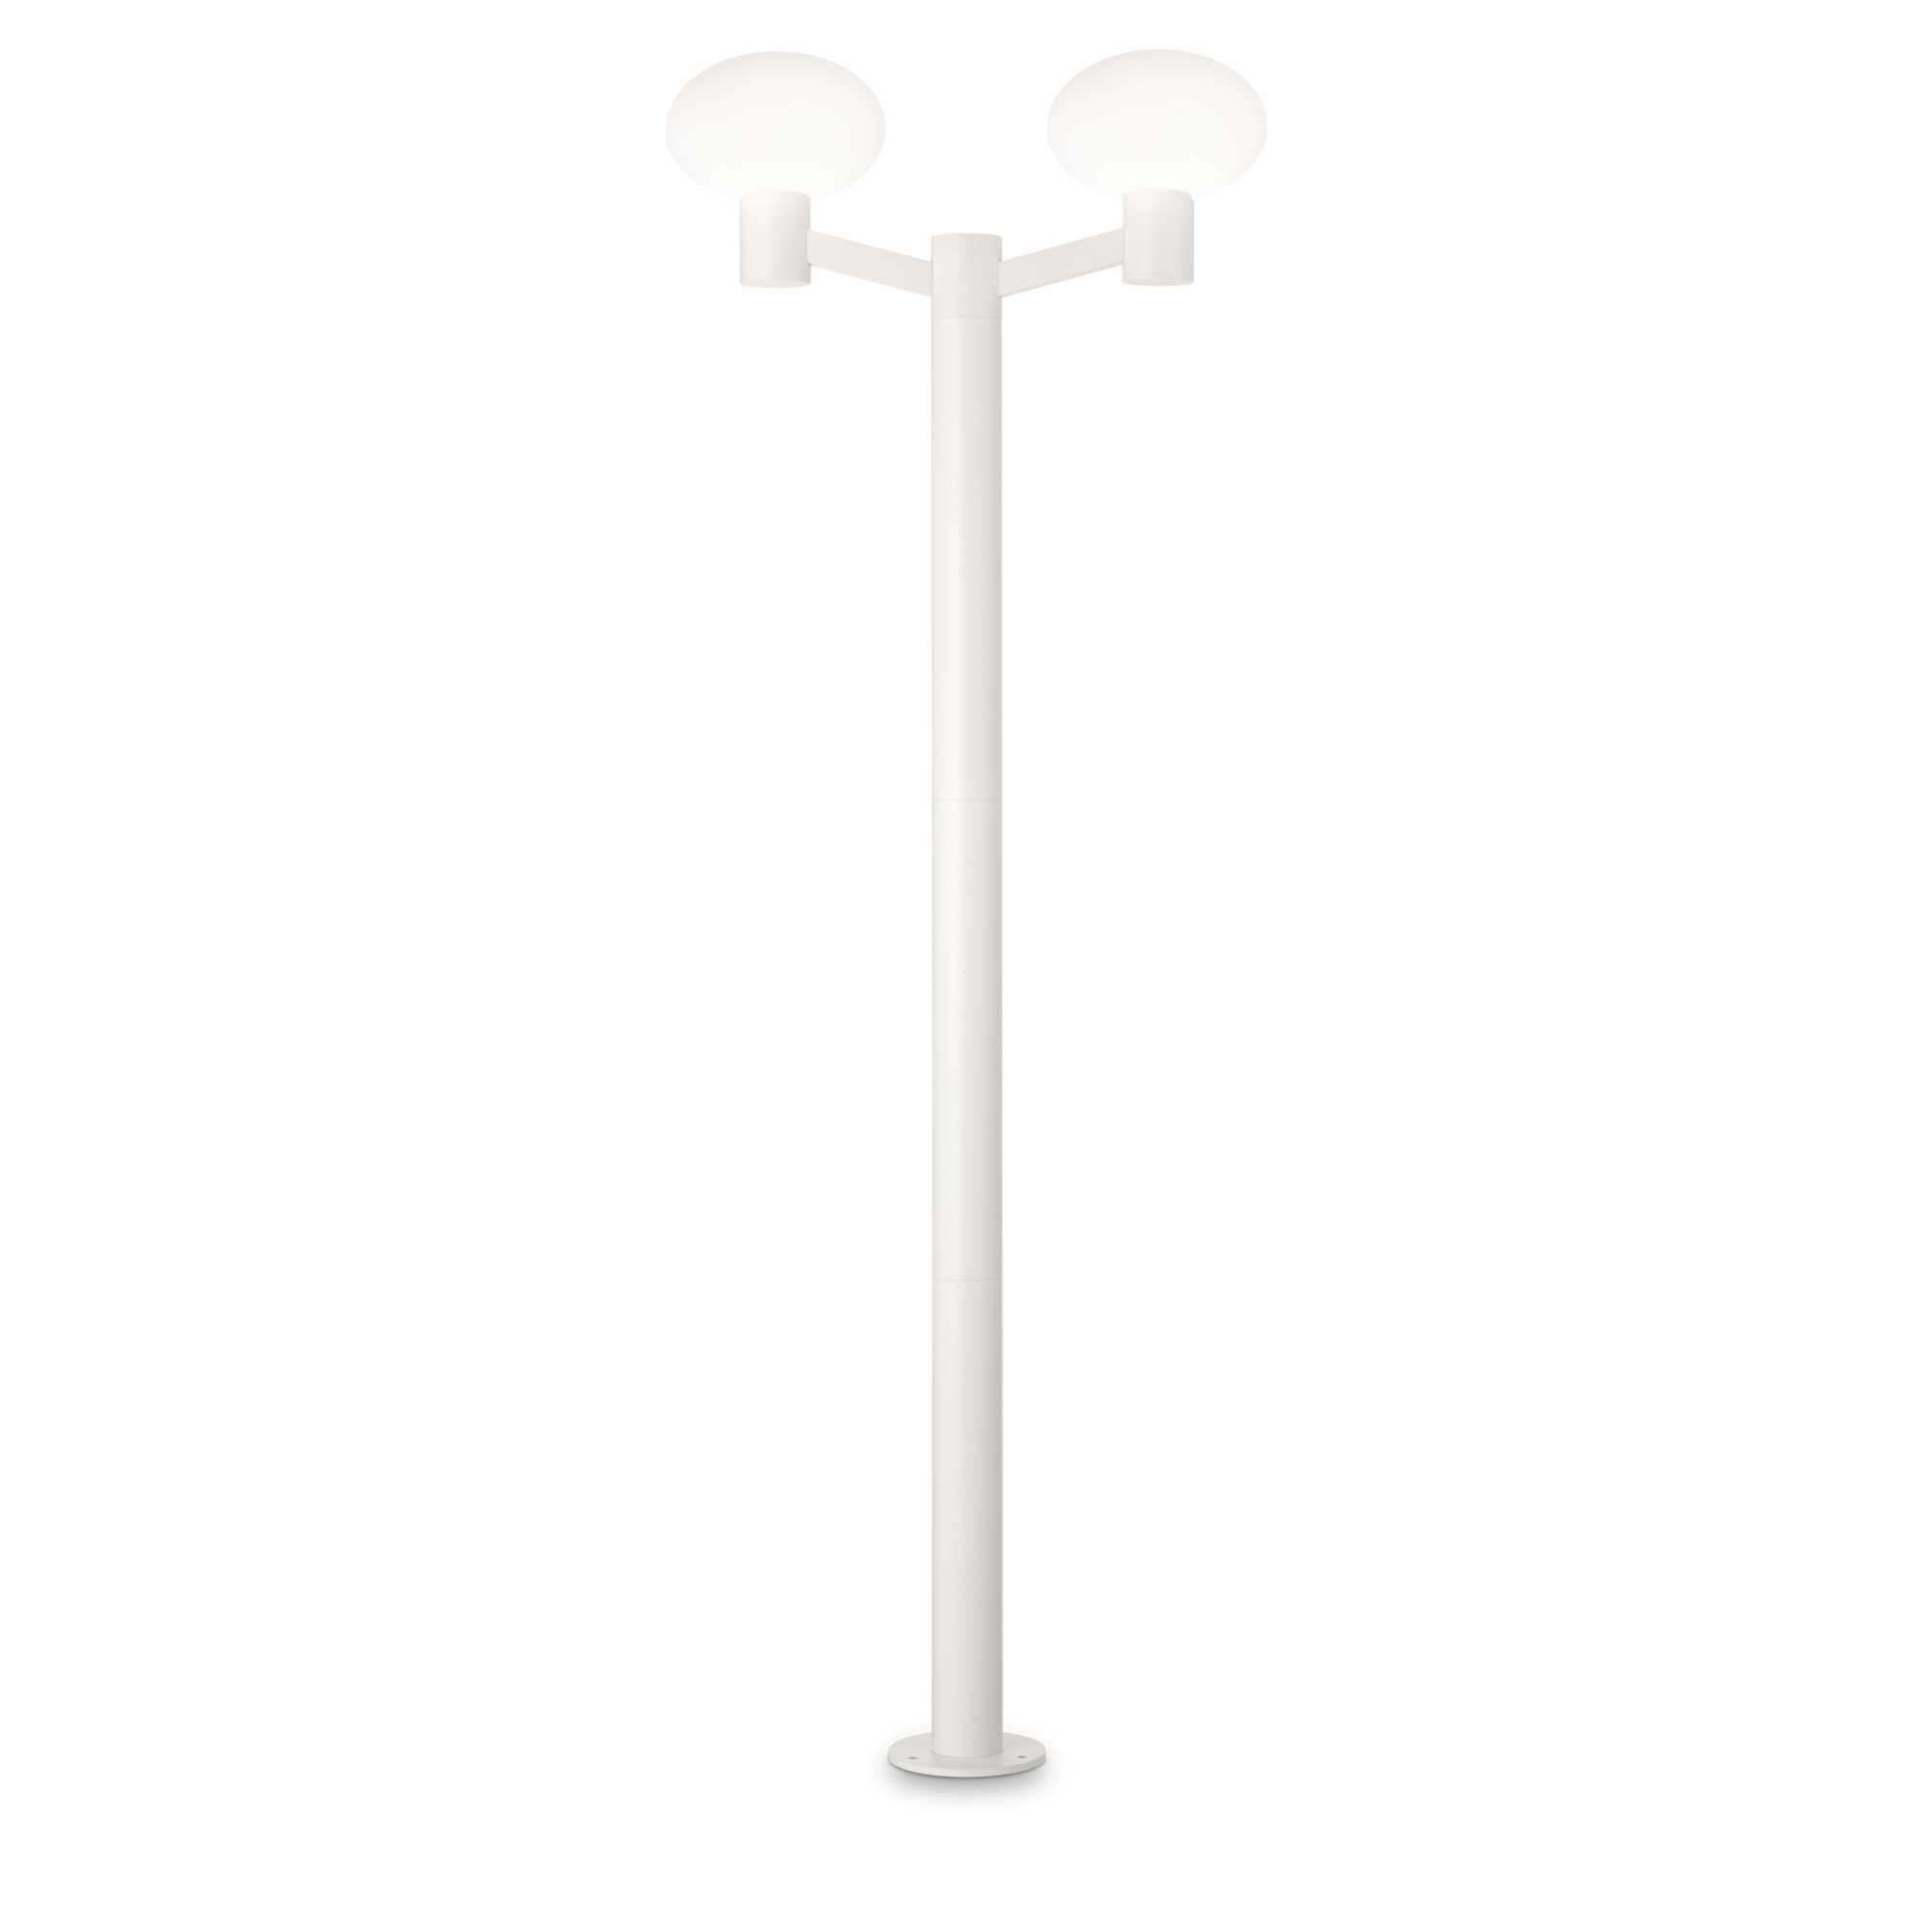 AD hotelska oprema Vanjska podna lampa Clio mpt2- Bijele boje slika proizvoda